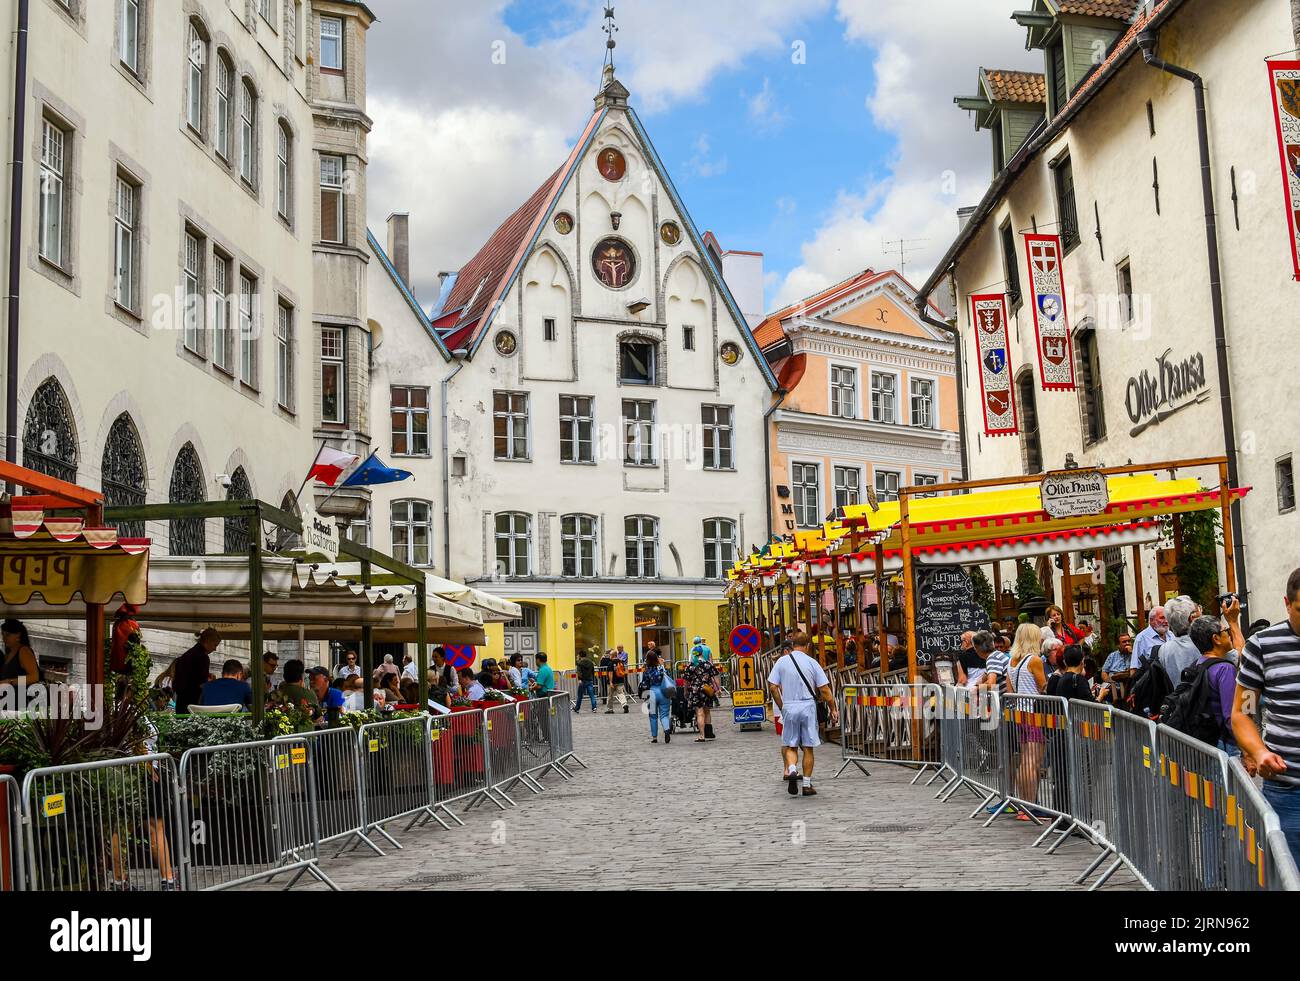 Une rue pavée pittoresque de cafés et de boutiques près de la maison de l'évêque dans la vieille ville médiévale de Tallinn, dans la région Baltique du Nord Banque D'Images